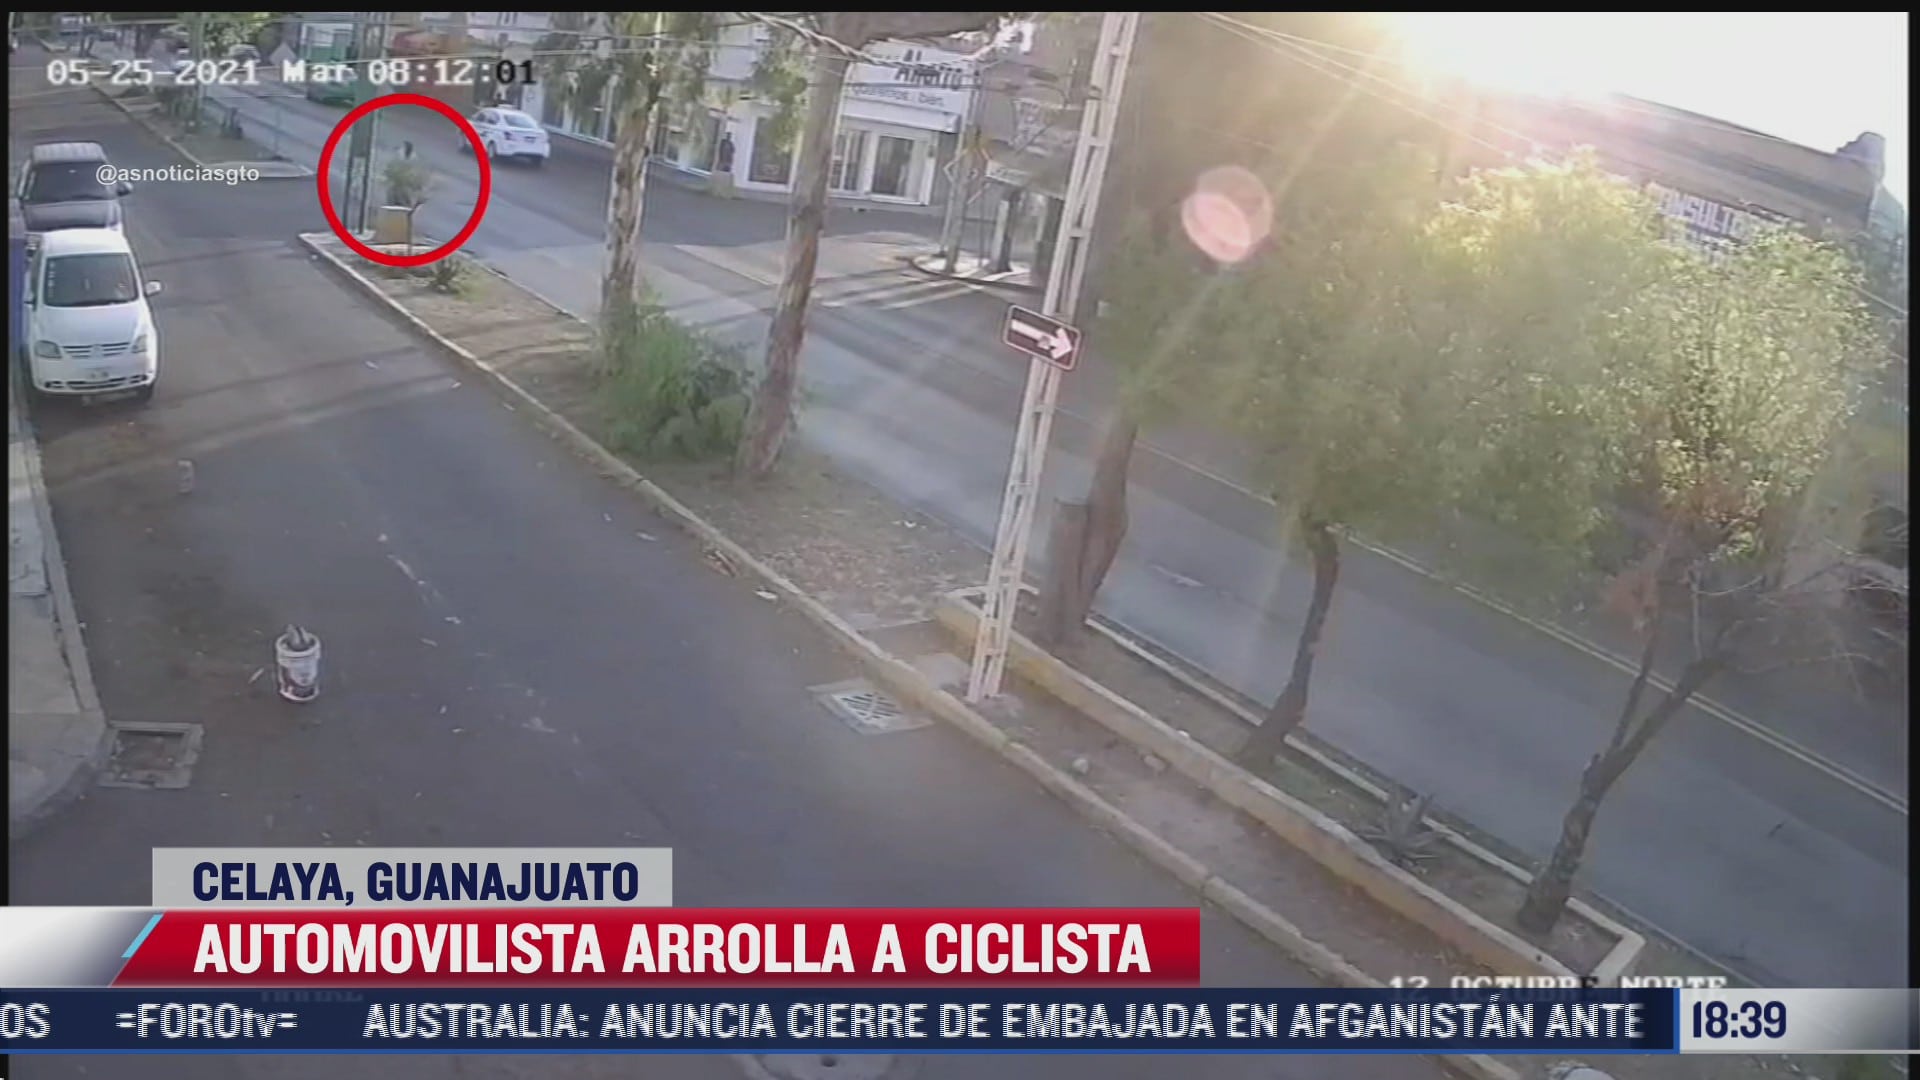 camara de vigilancia capta instante en que ciclista es atropellado en guanajuato